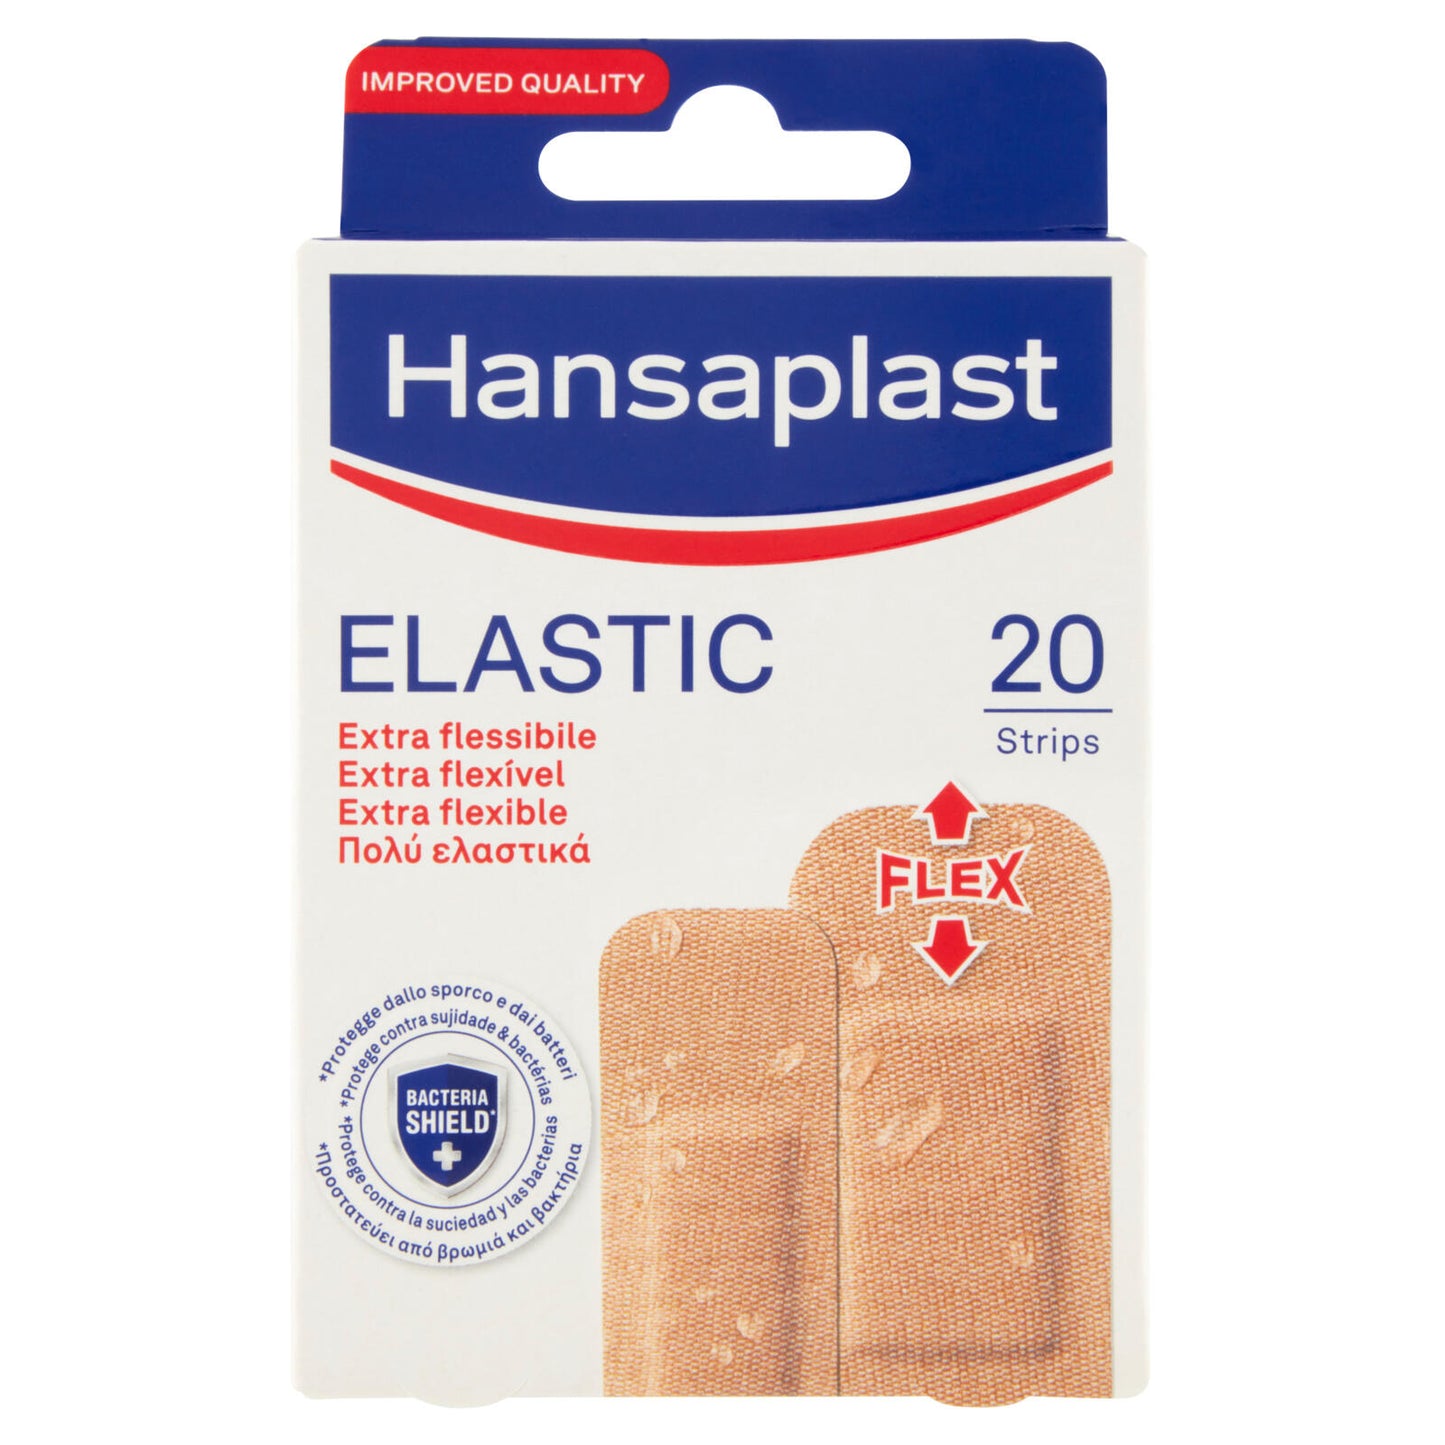 Hansaplast Elastic 20 pz